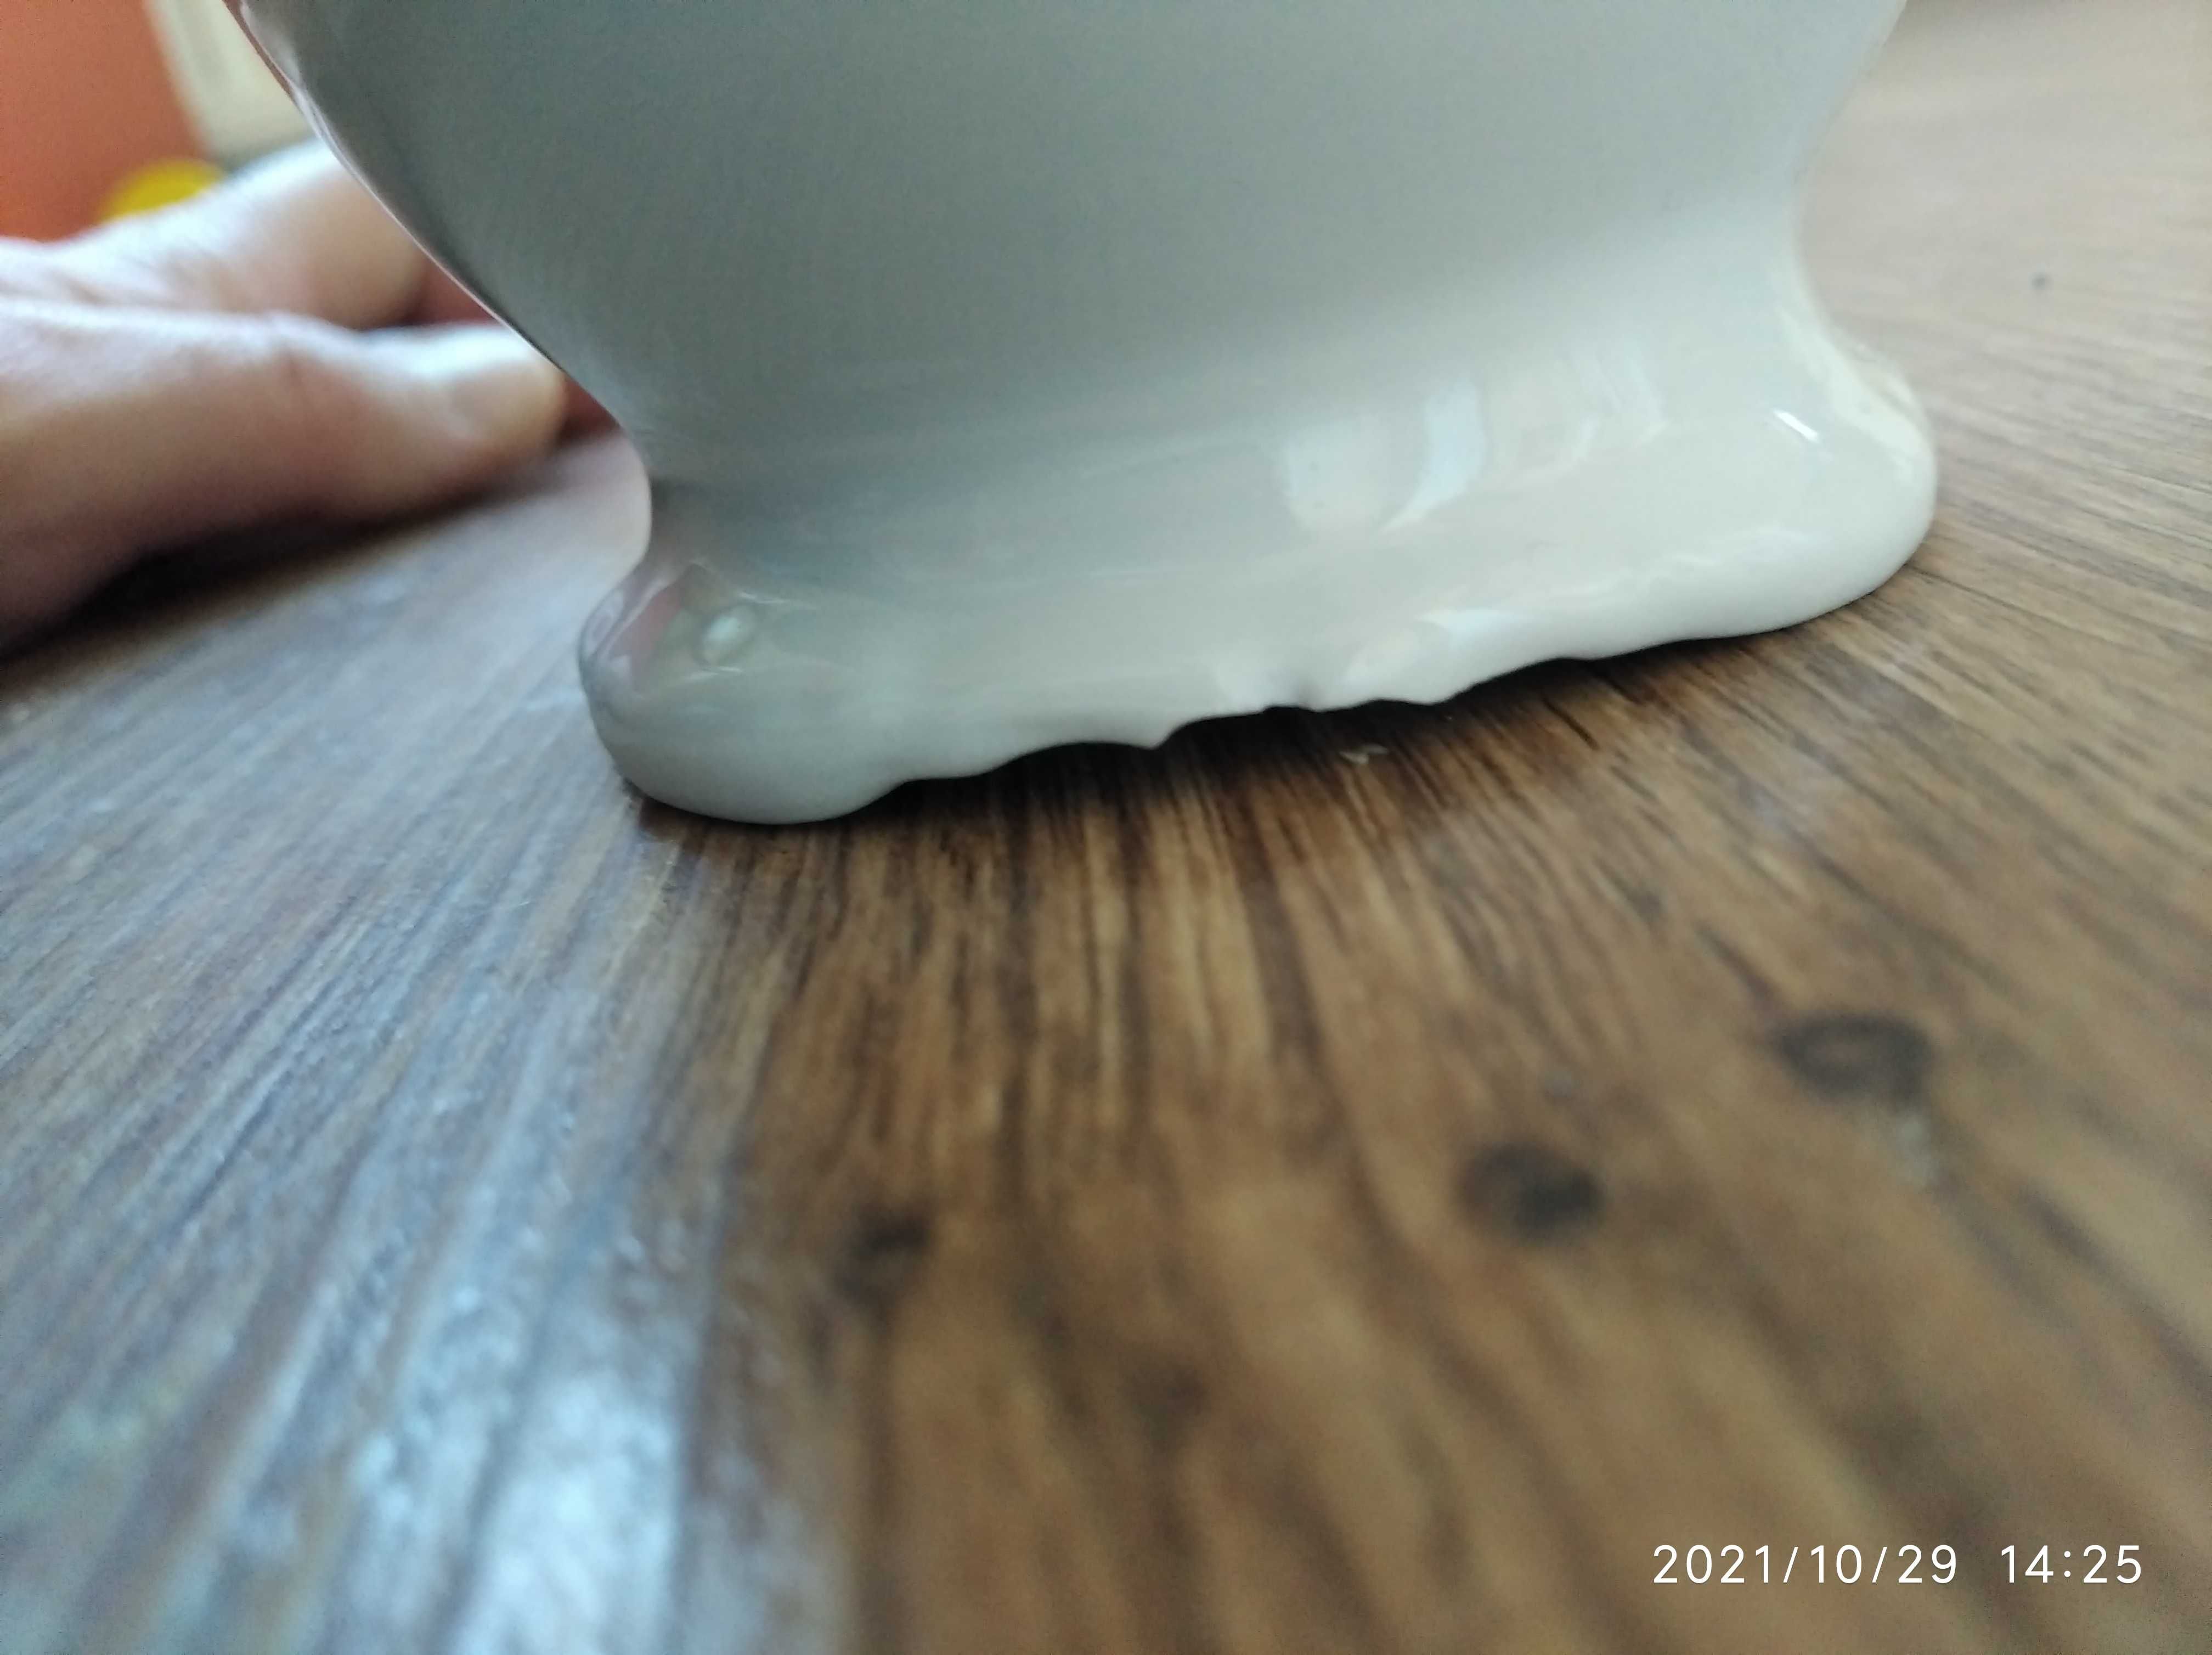 Dzbanek dzbanuszek sosjerka porcelana porcelanowy z dziubkiem